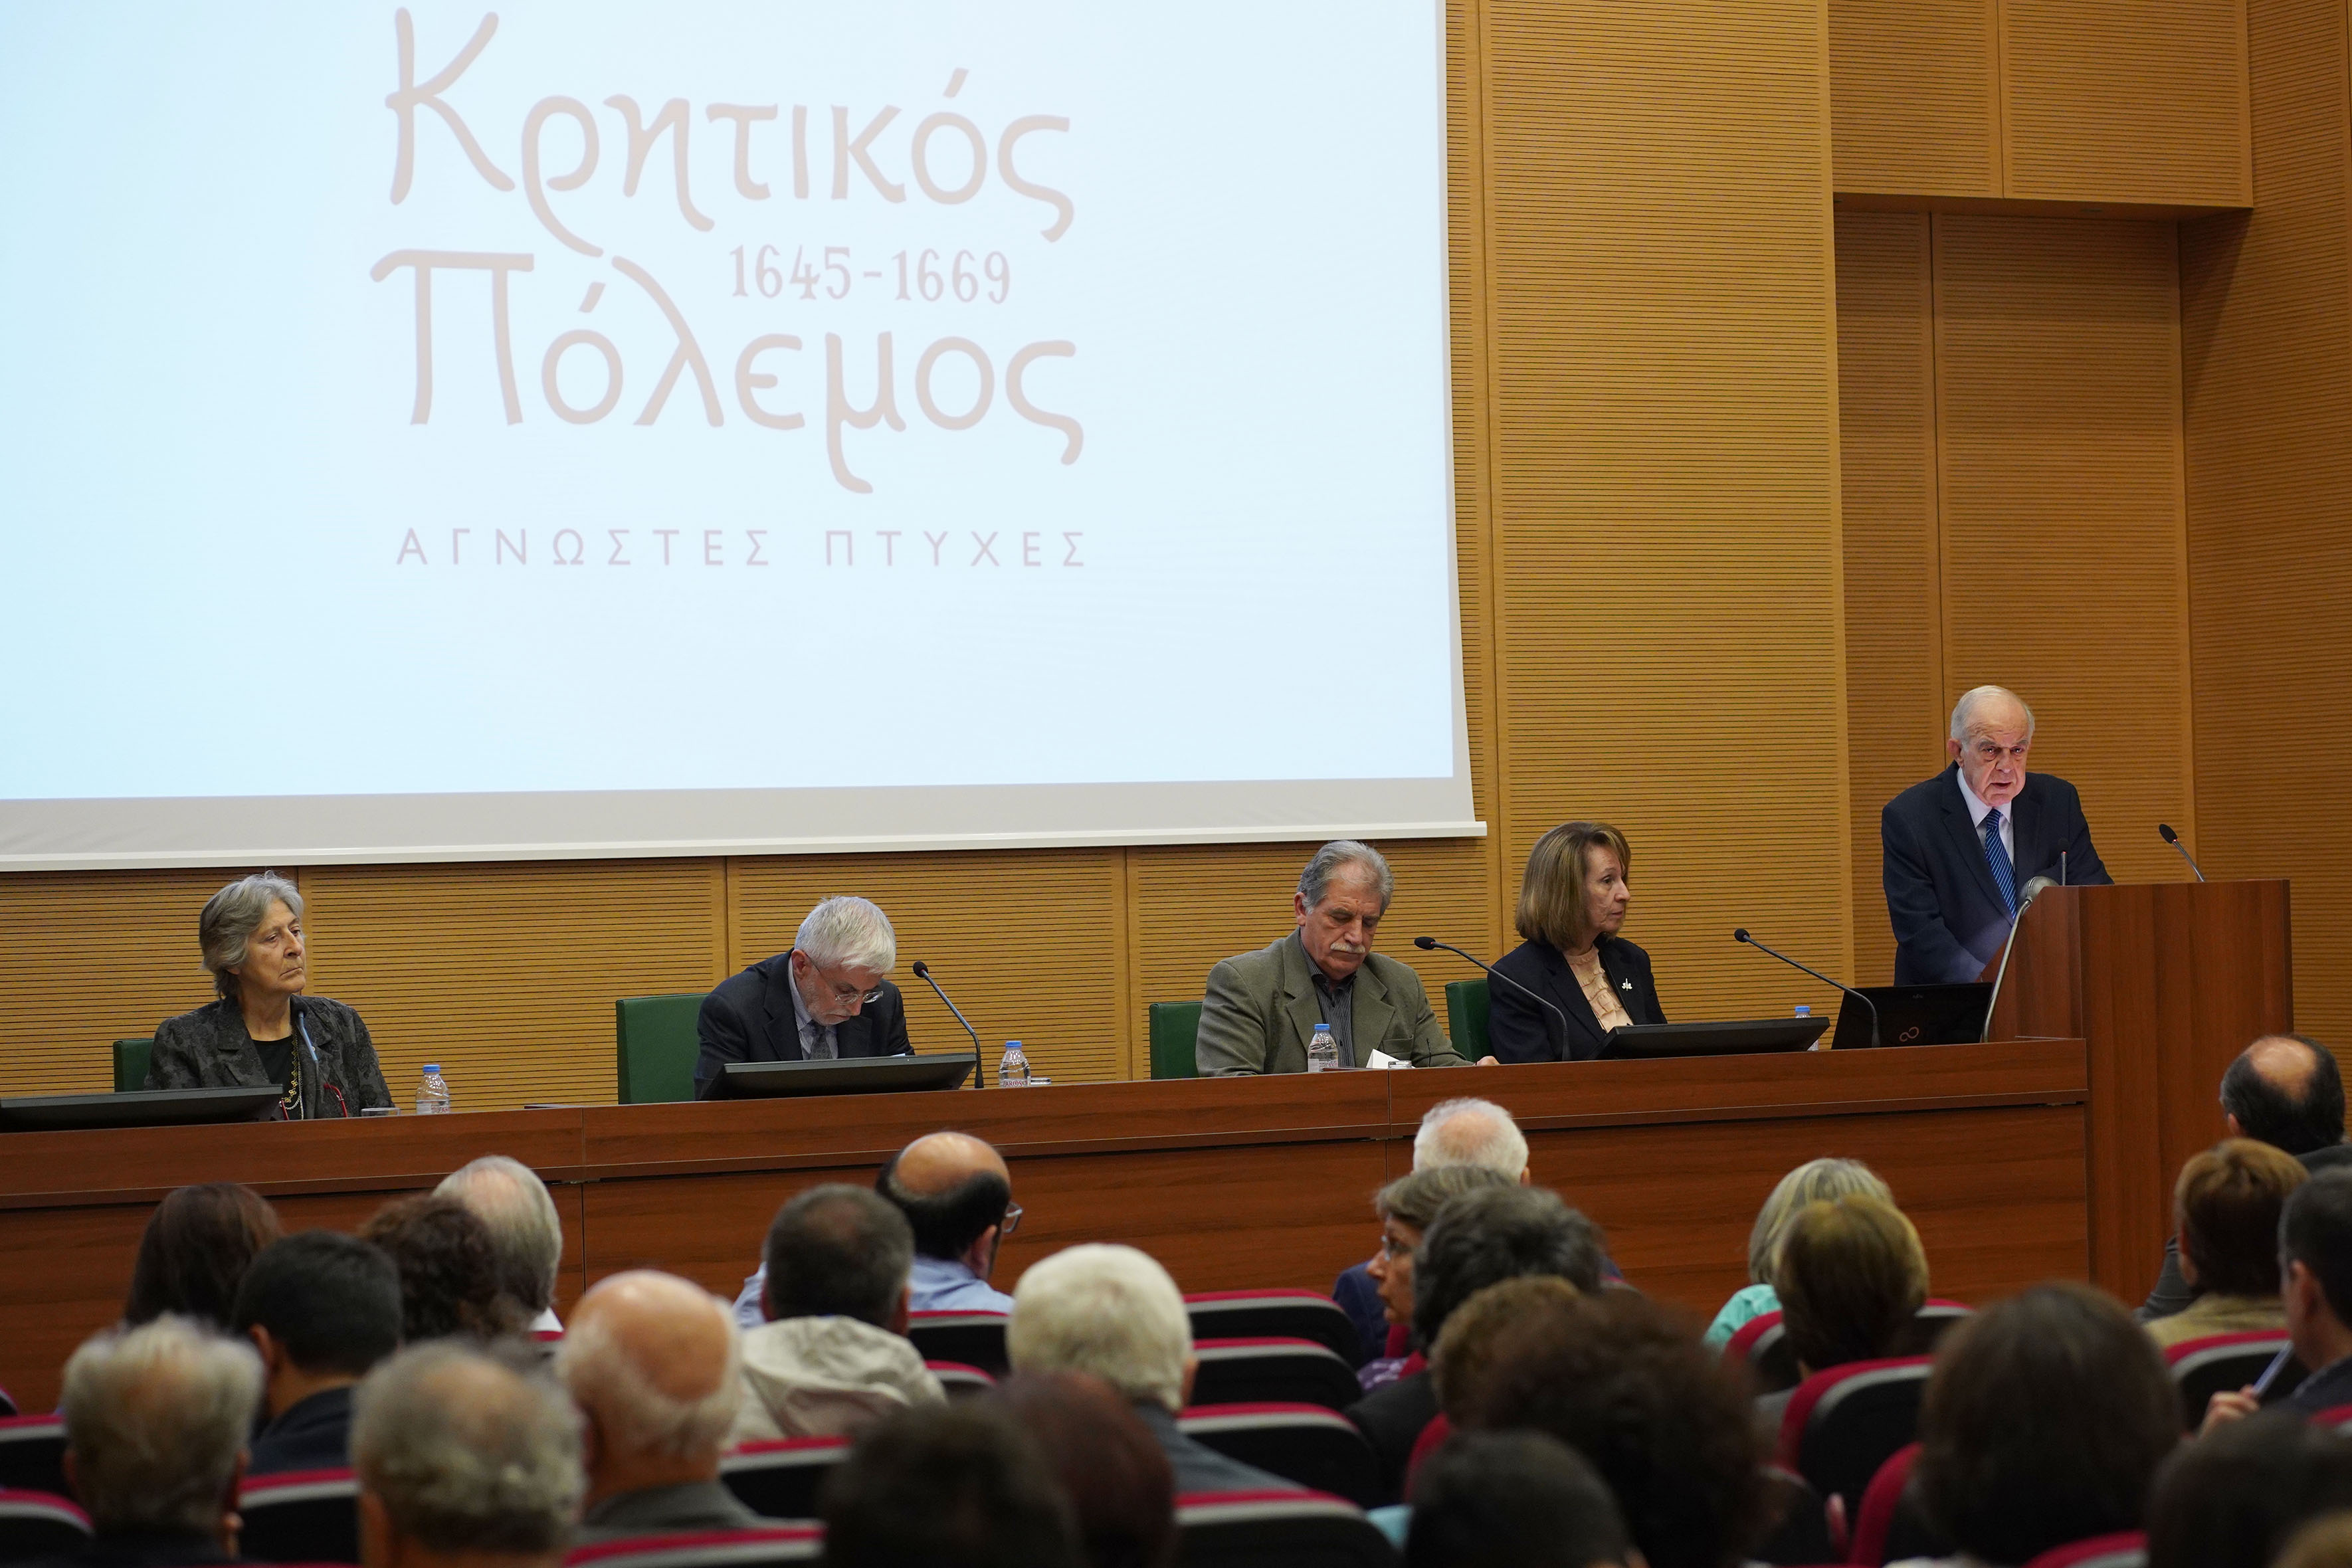 Ξεκίνησε στη Βικελαία Βιβλιοθήκη το Διεθνές Συνέδριο για τον Κρητικό Πόλεμο